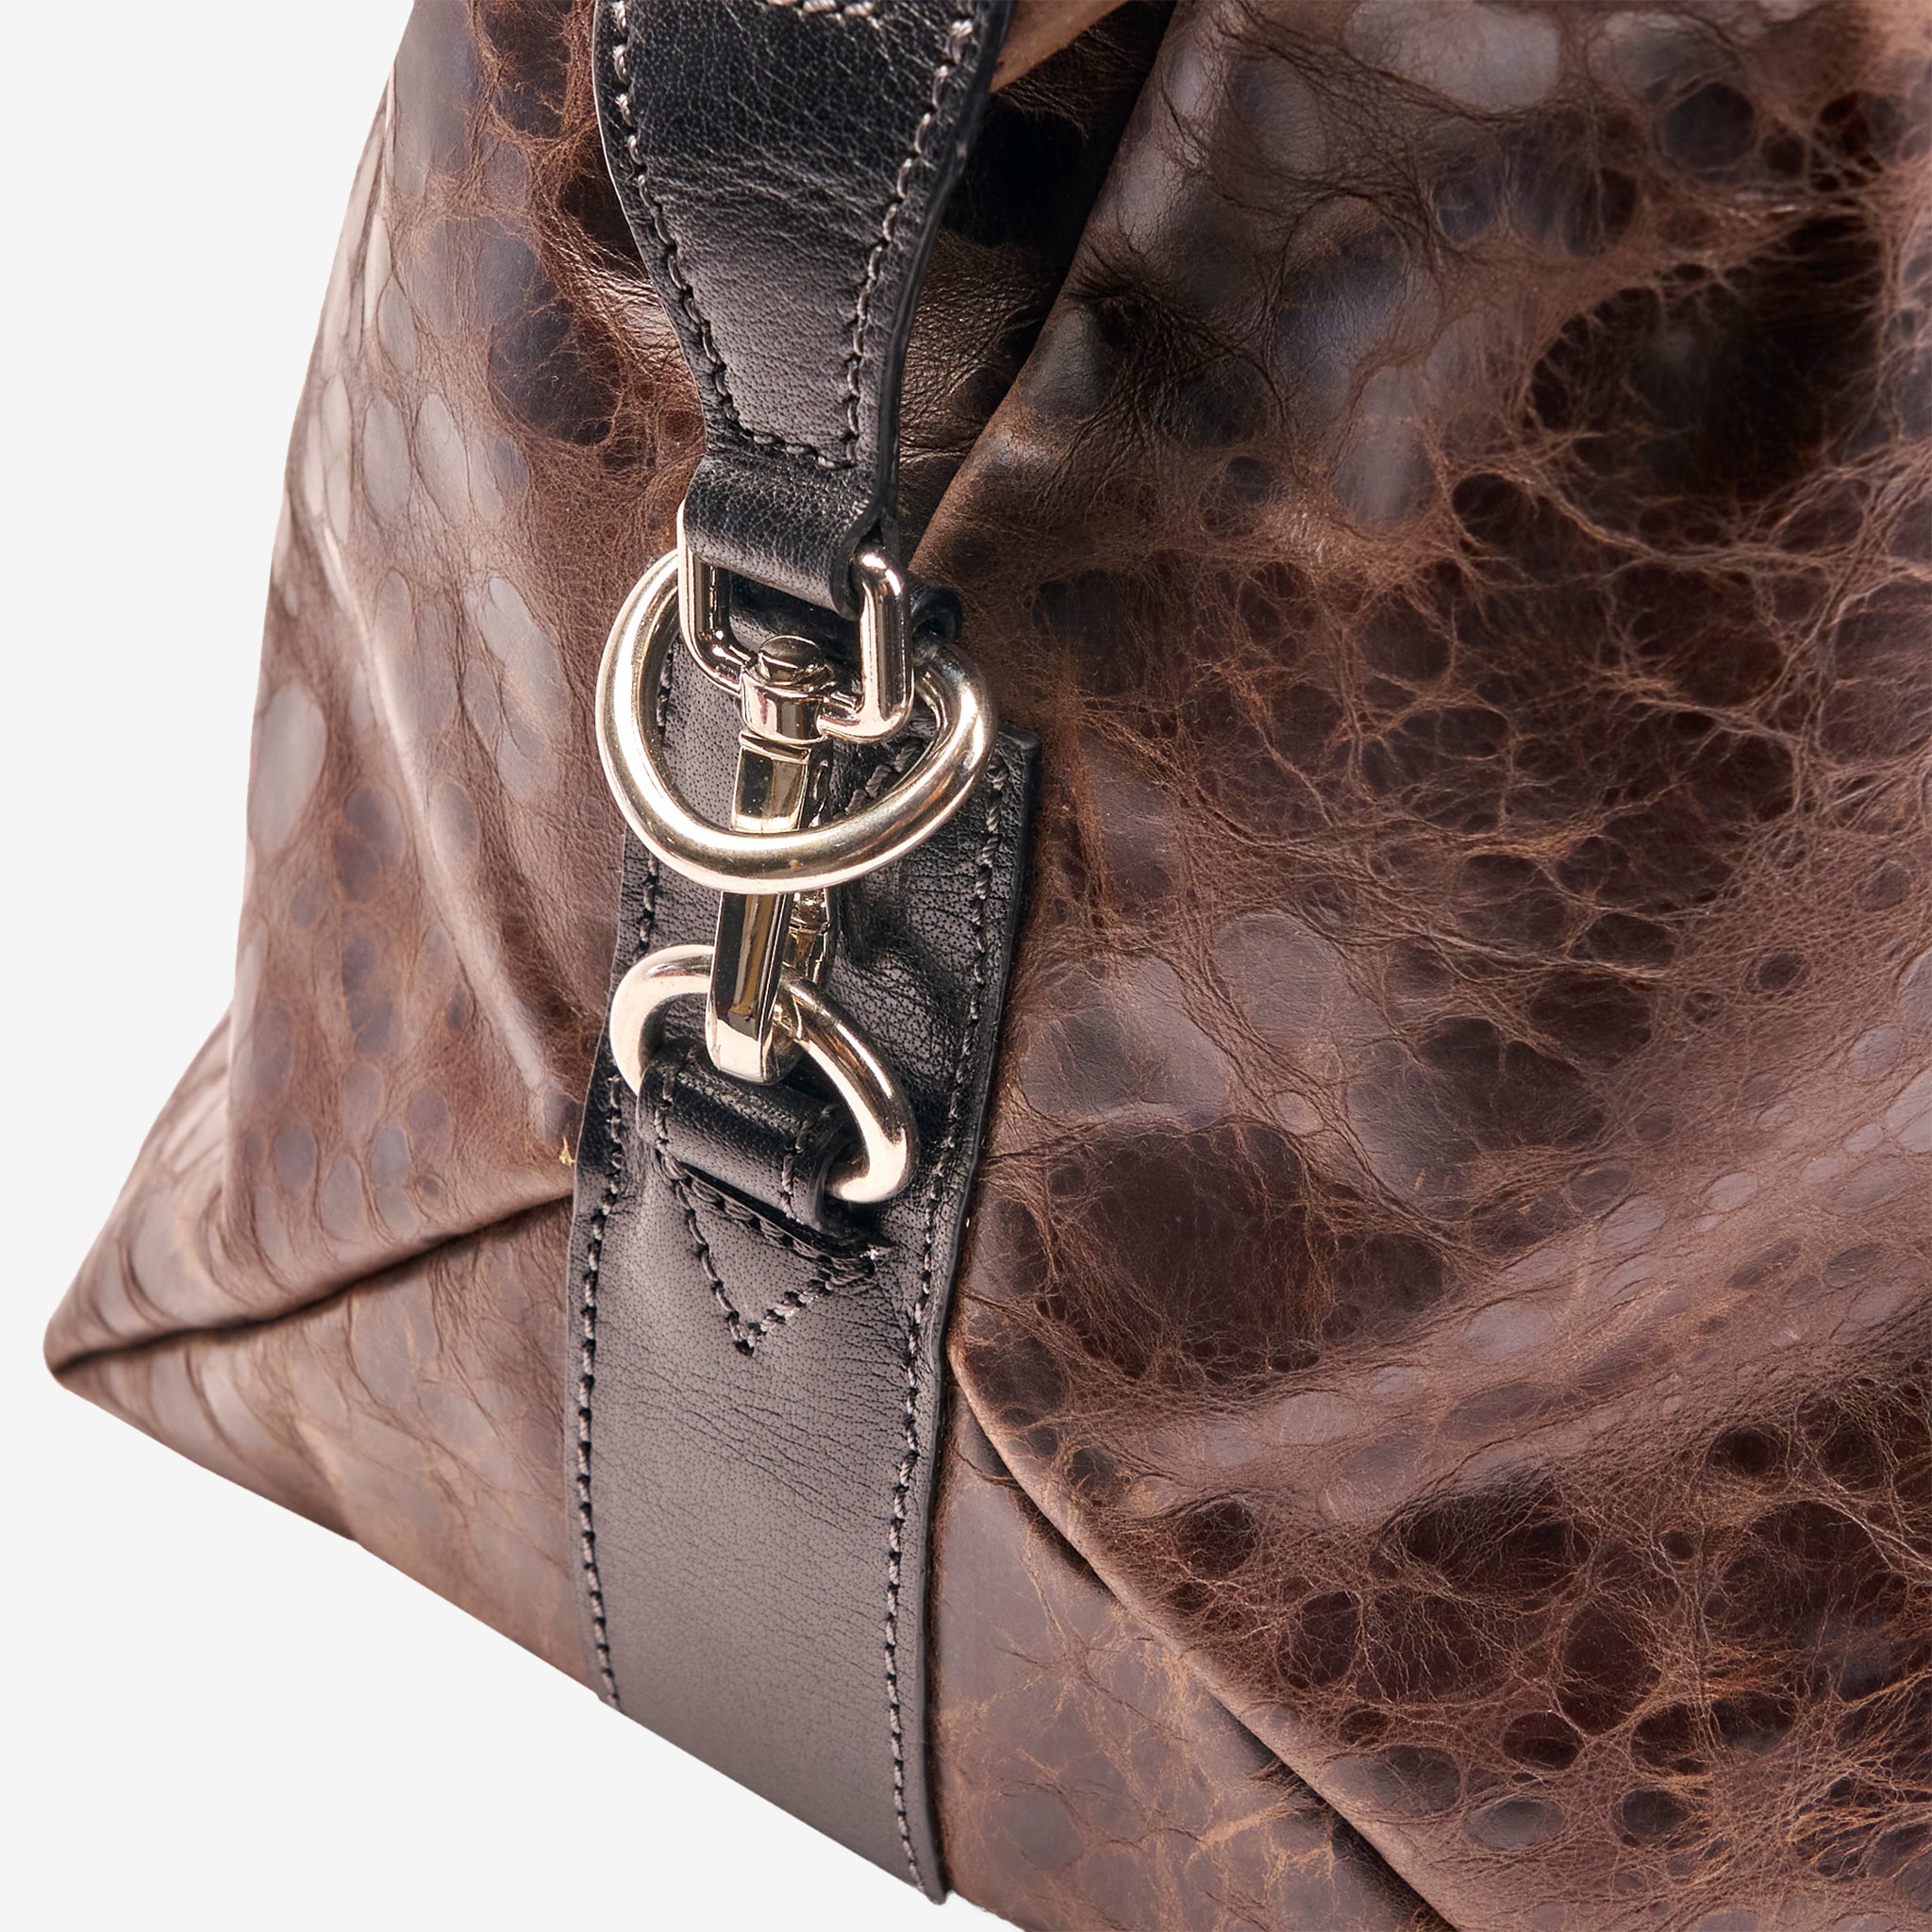 Campbell Crocodile Embossed Leather Weekender Bag